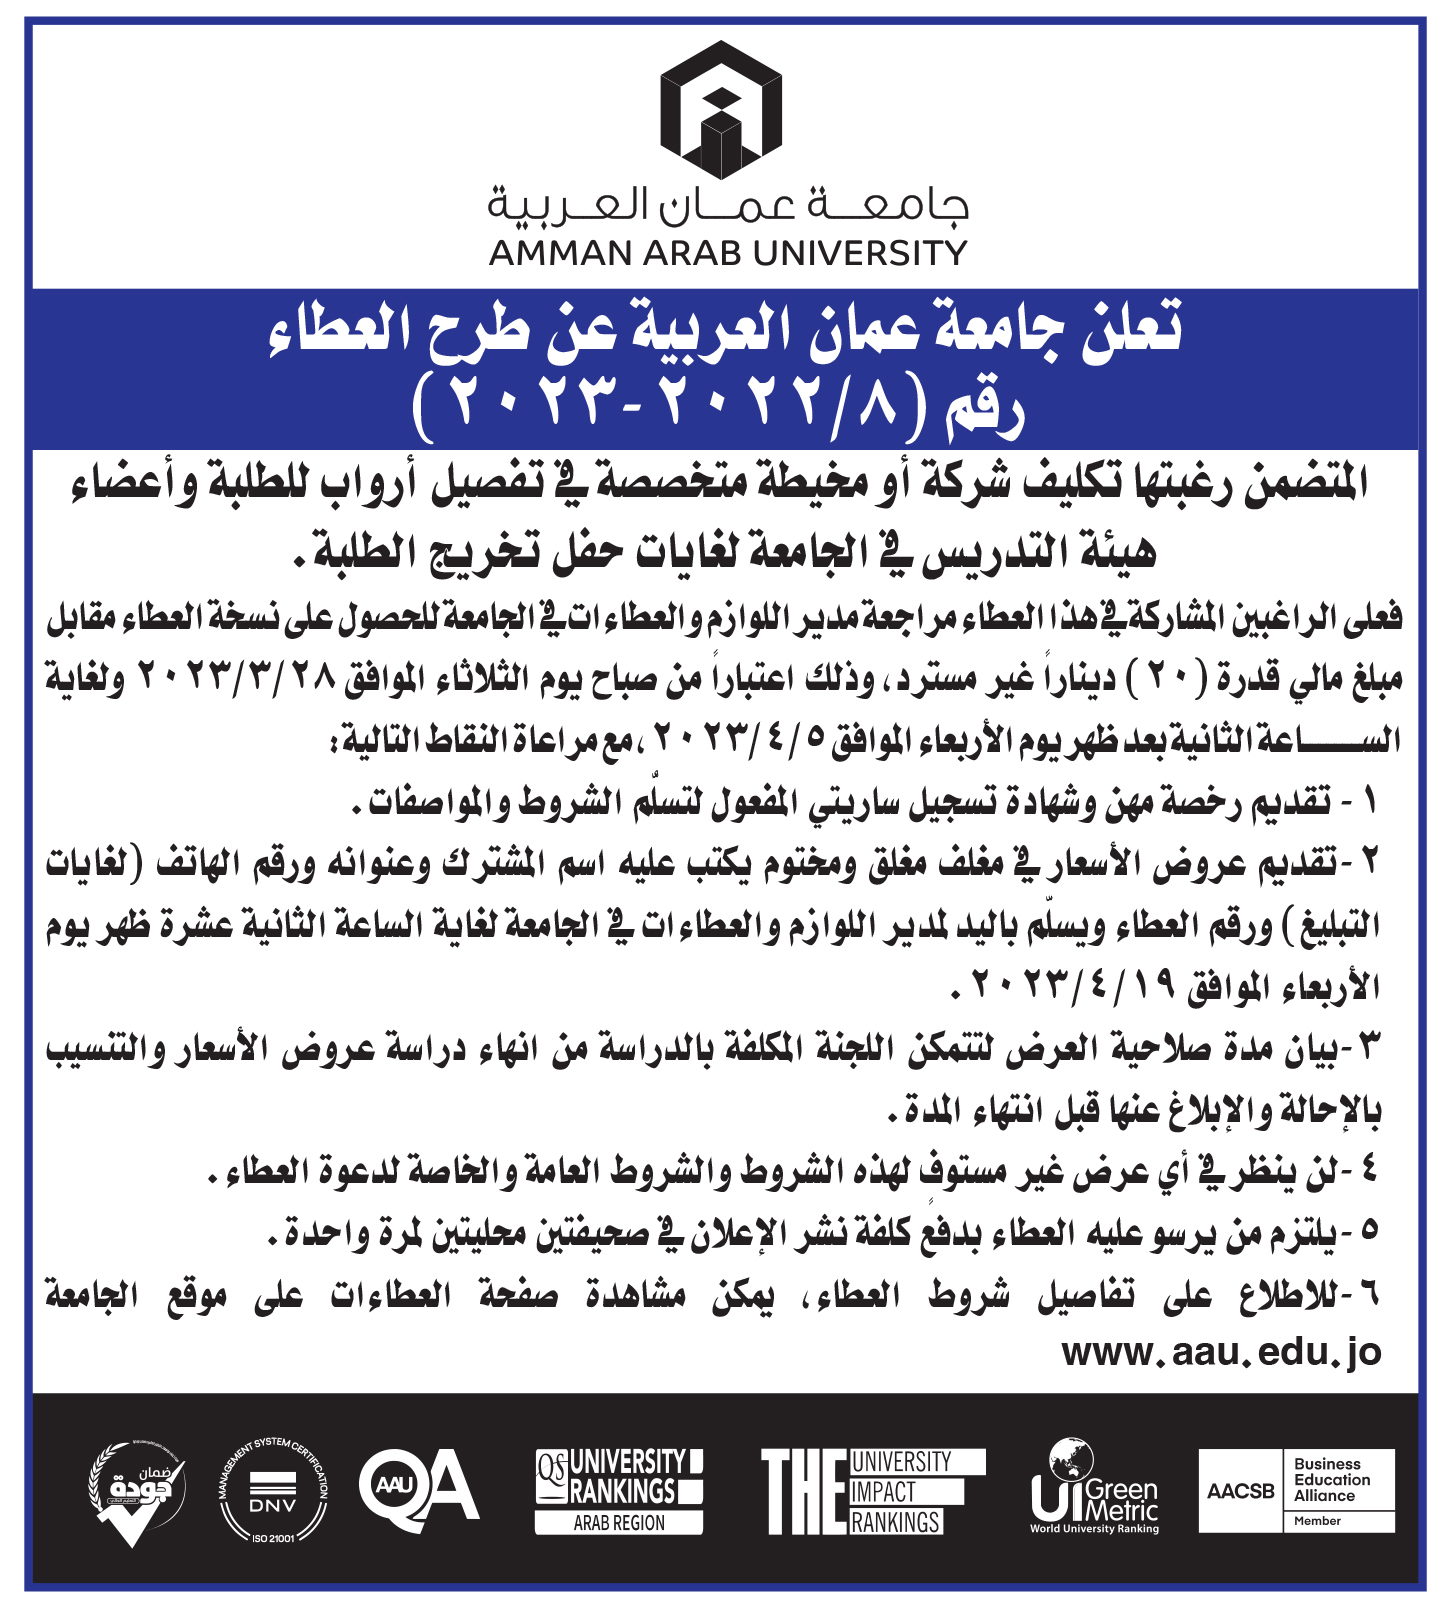 اعلان عطاء رقم 8- تفصيل أرواب لأعضاء الهيئة التدريسية والطلبة- جامعة عمان العربية